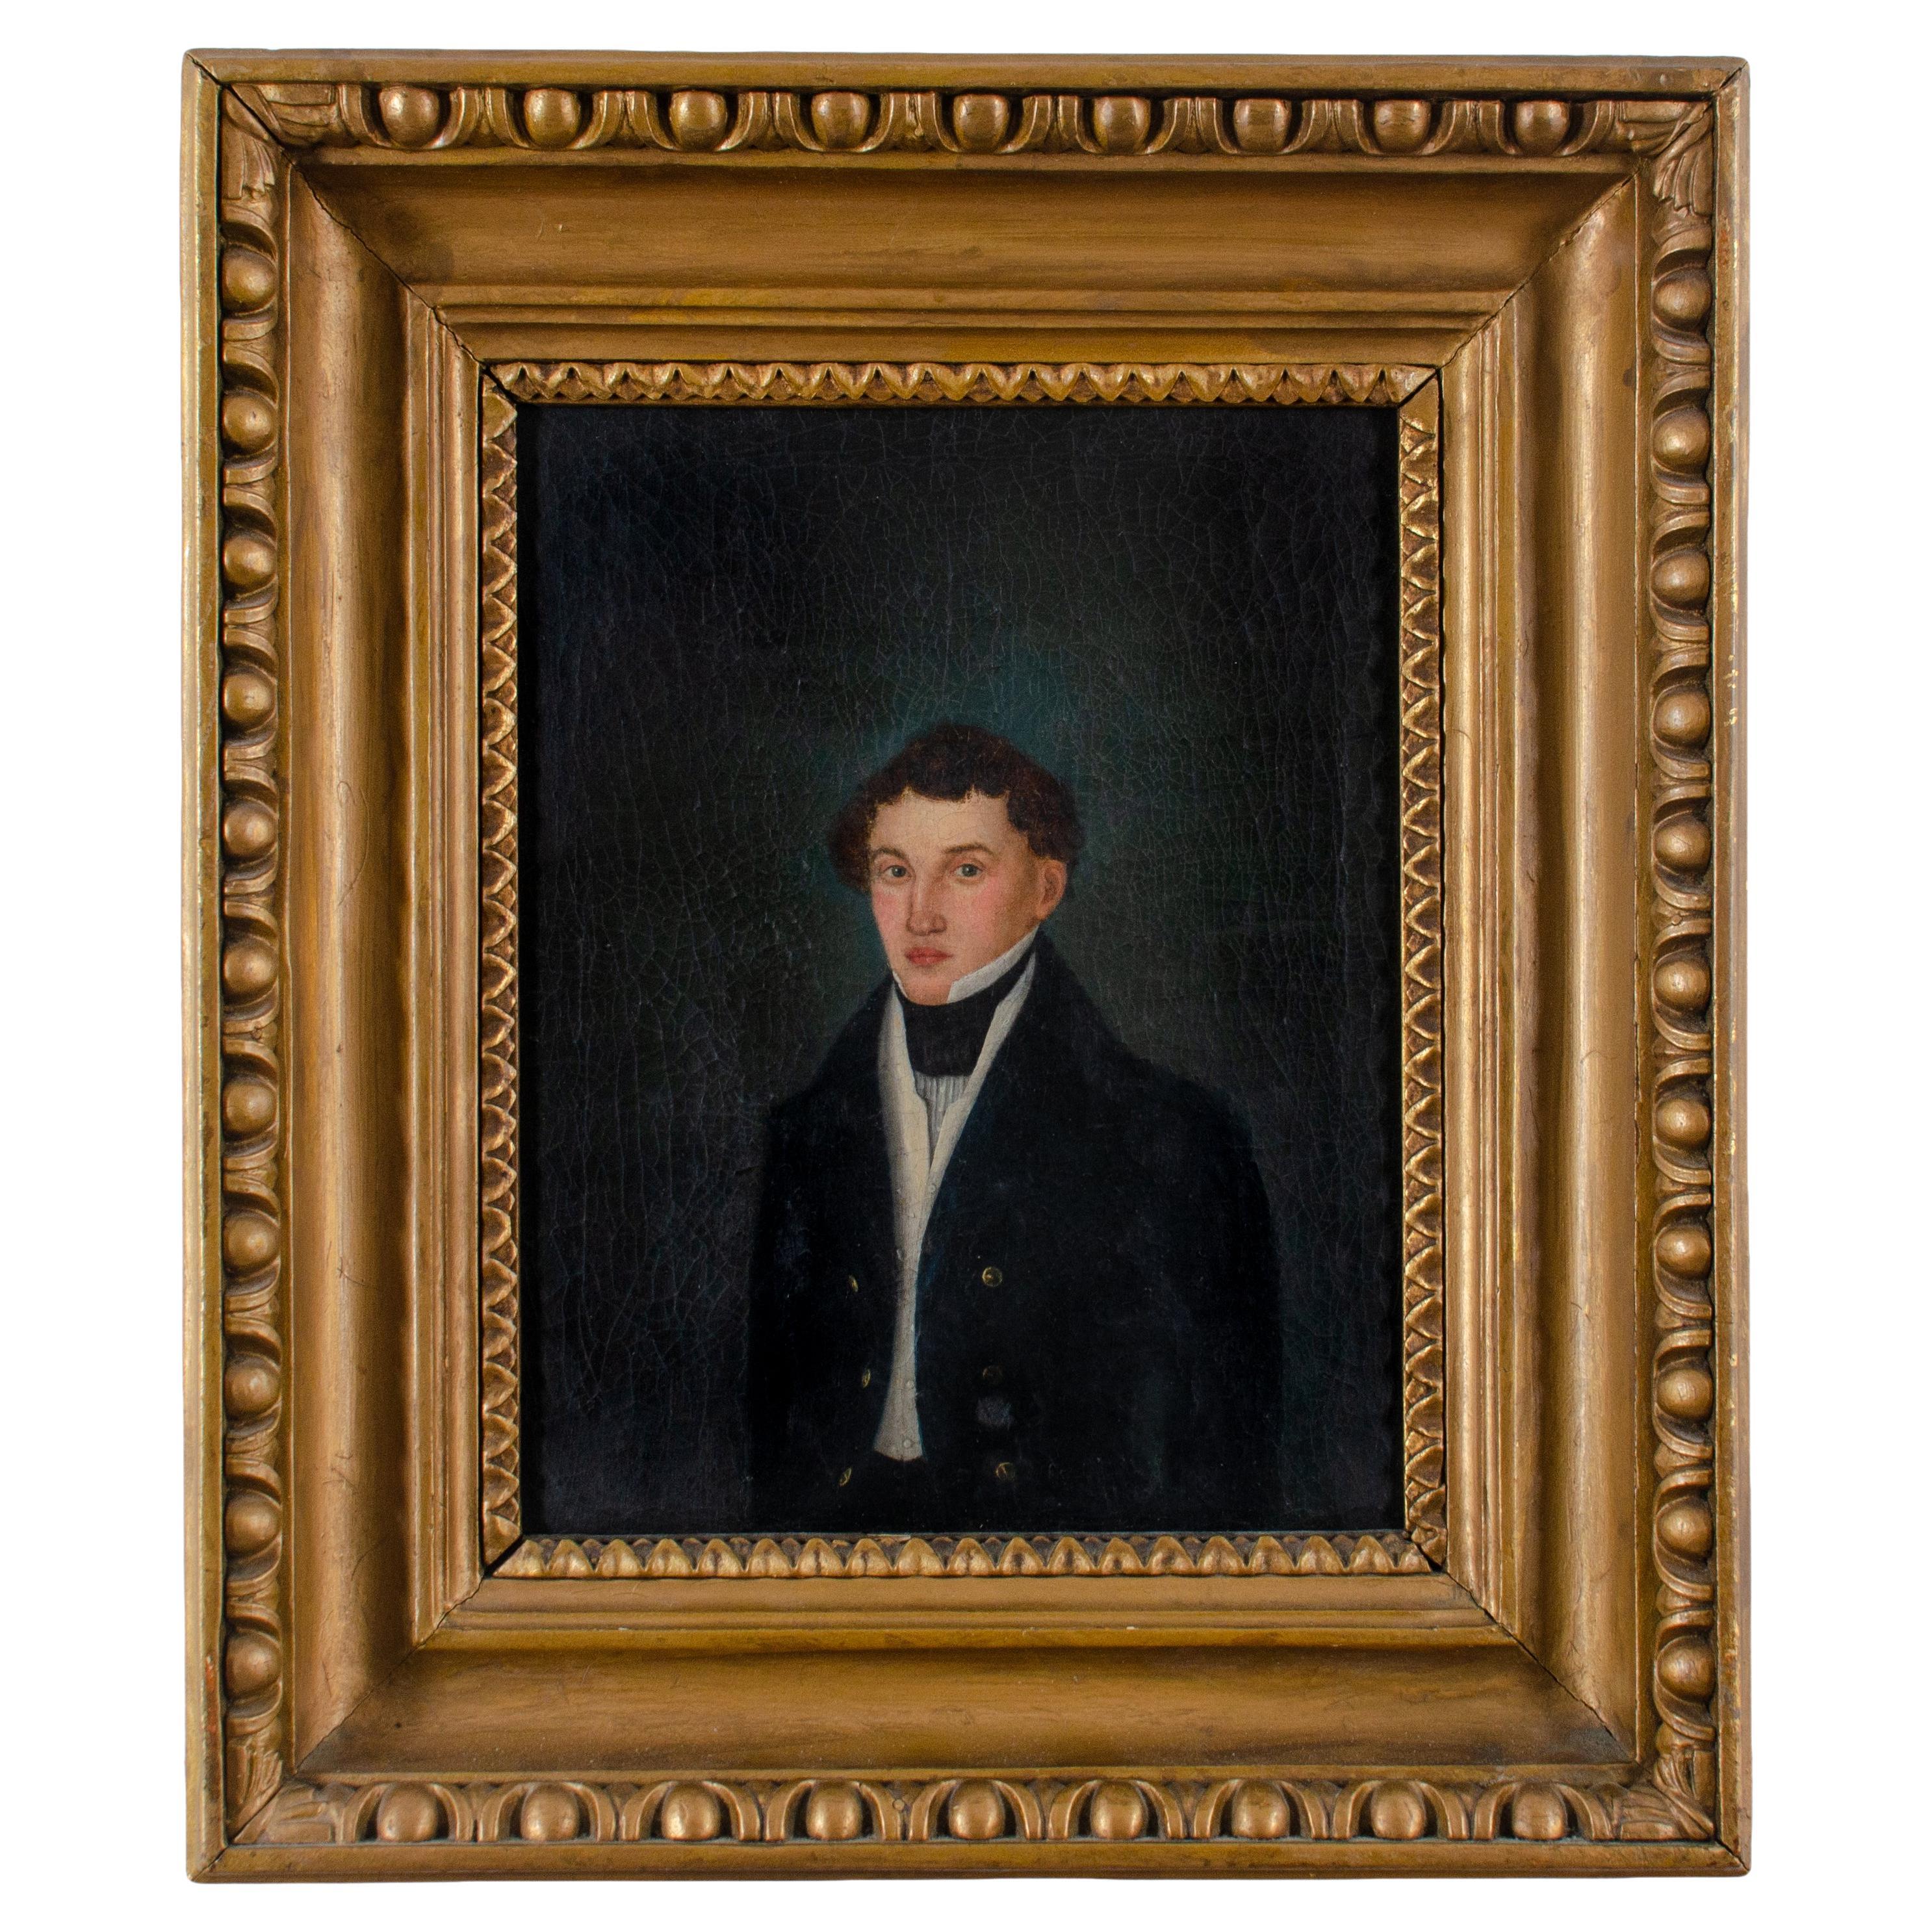 Limner, Porträt eines jungen Gentleman, 19. Jahrhundert